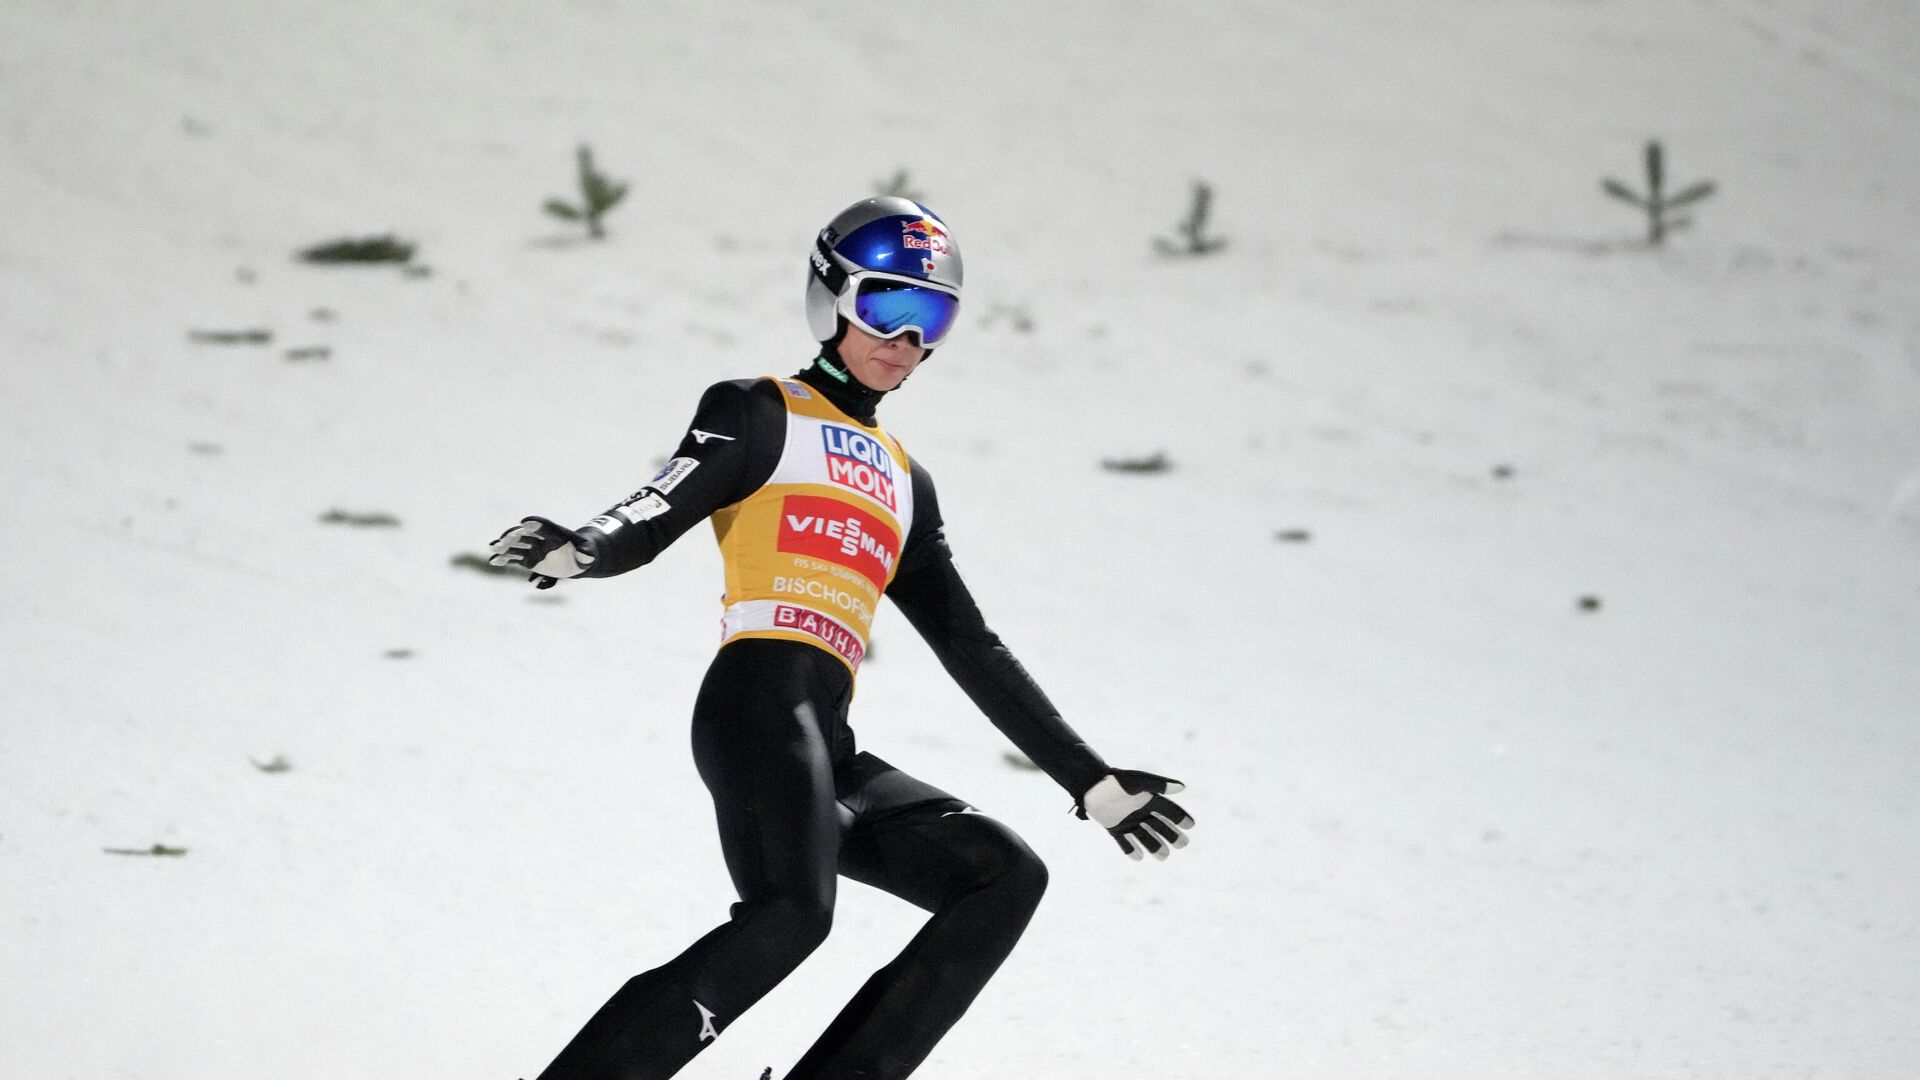 Japanski ski skakač Rjoju Kobajaši, pobednik Četiri skakaonice za 2022. - Sputnik Srbija, 1920, 06.01.2022